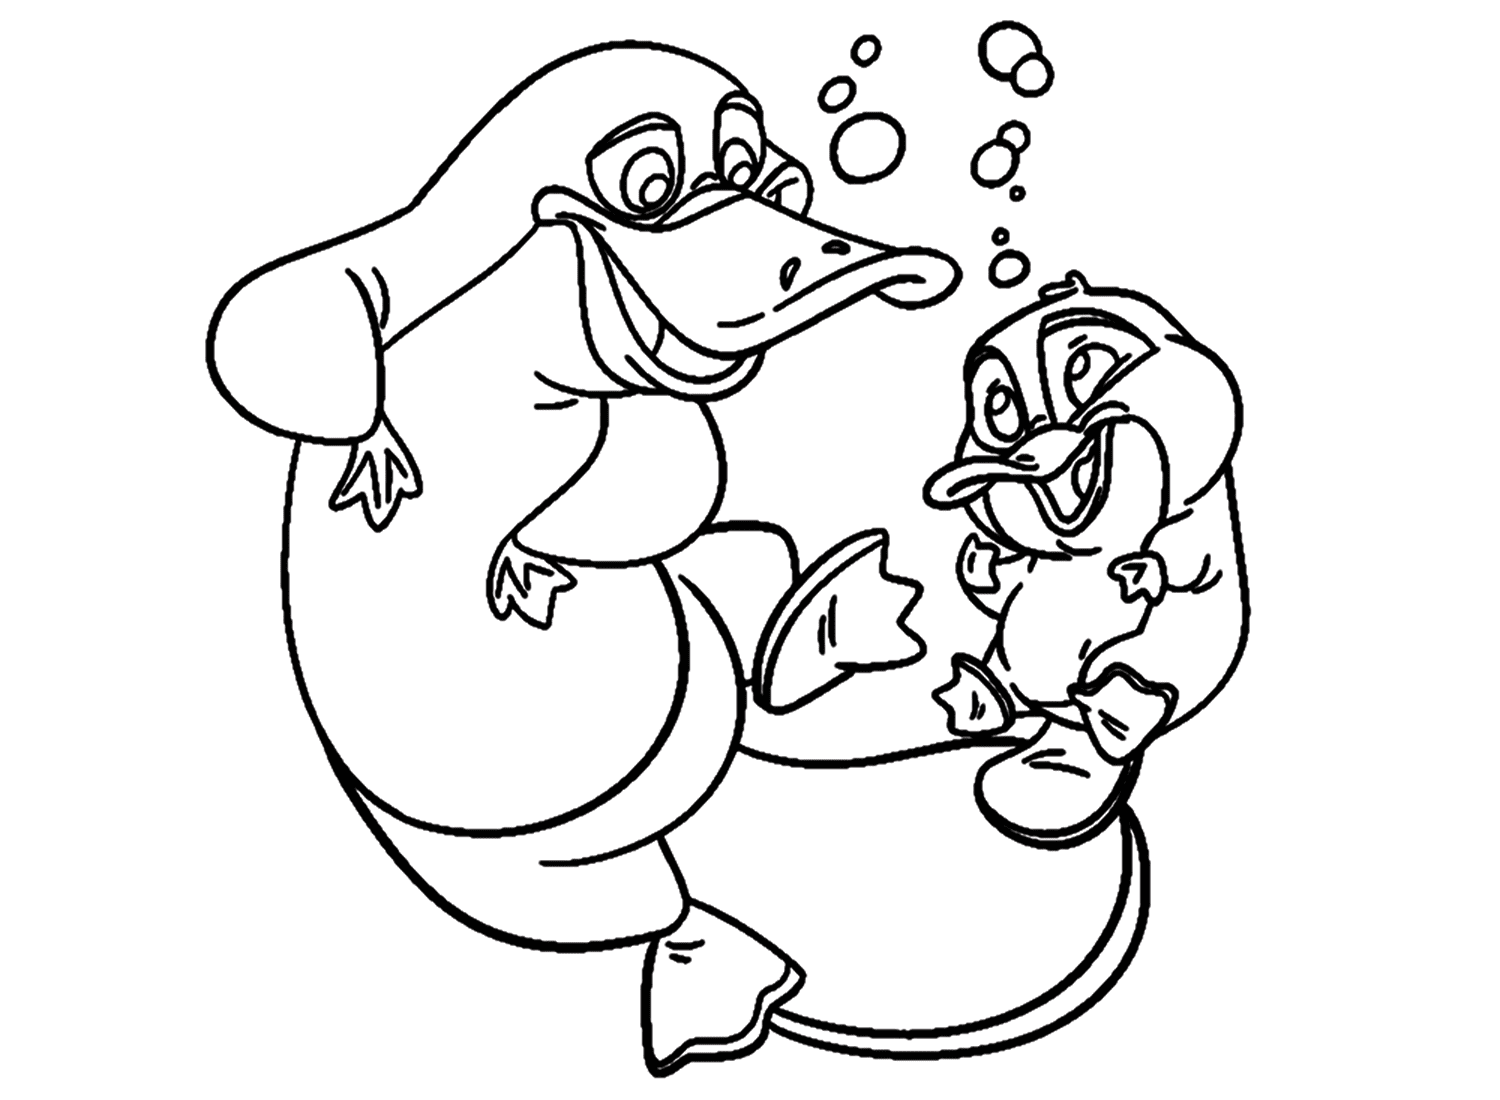 Два утконоса, играющие под водой от Platypus